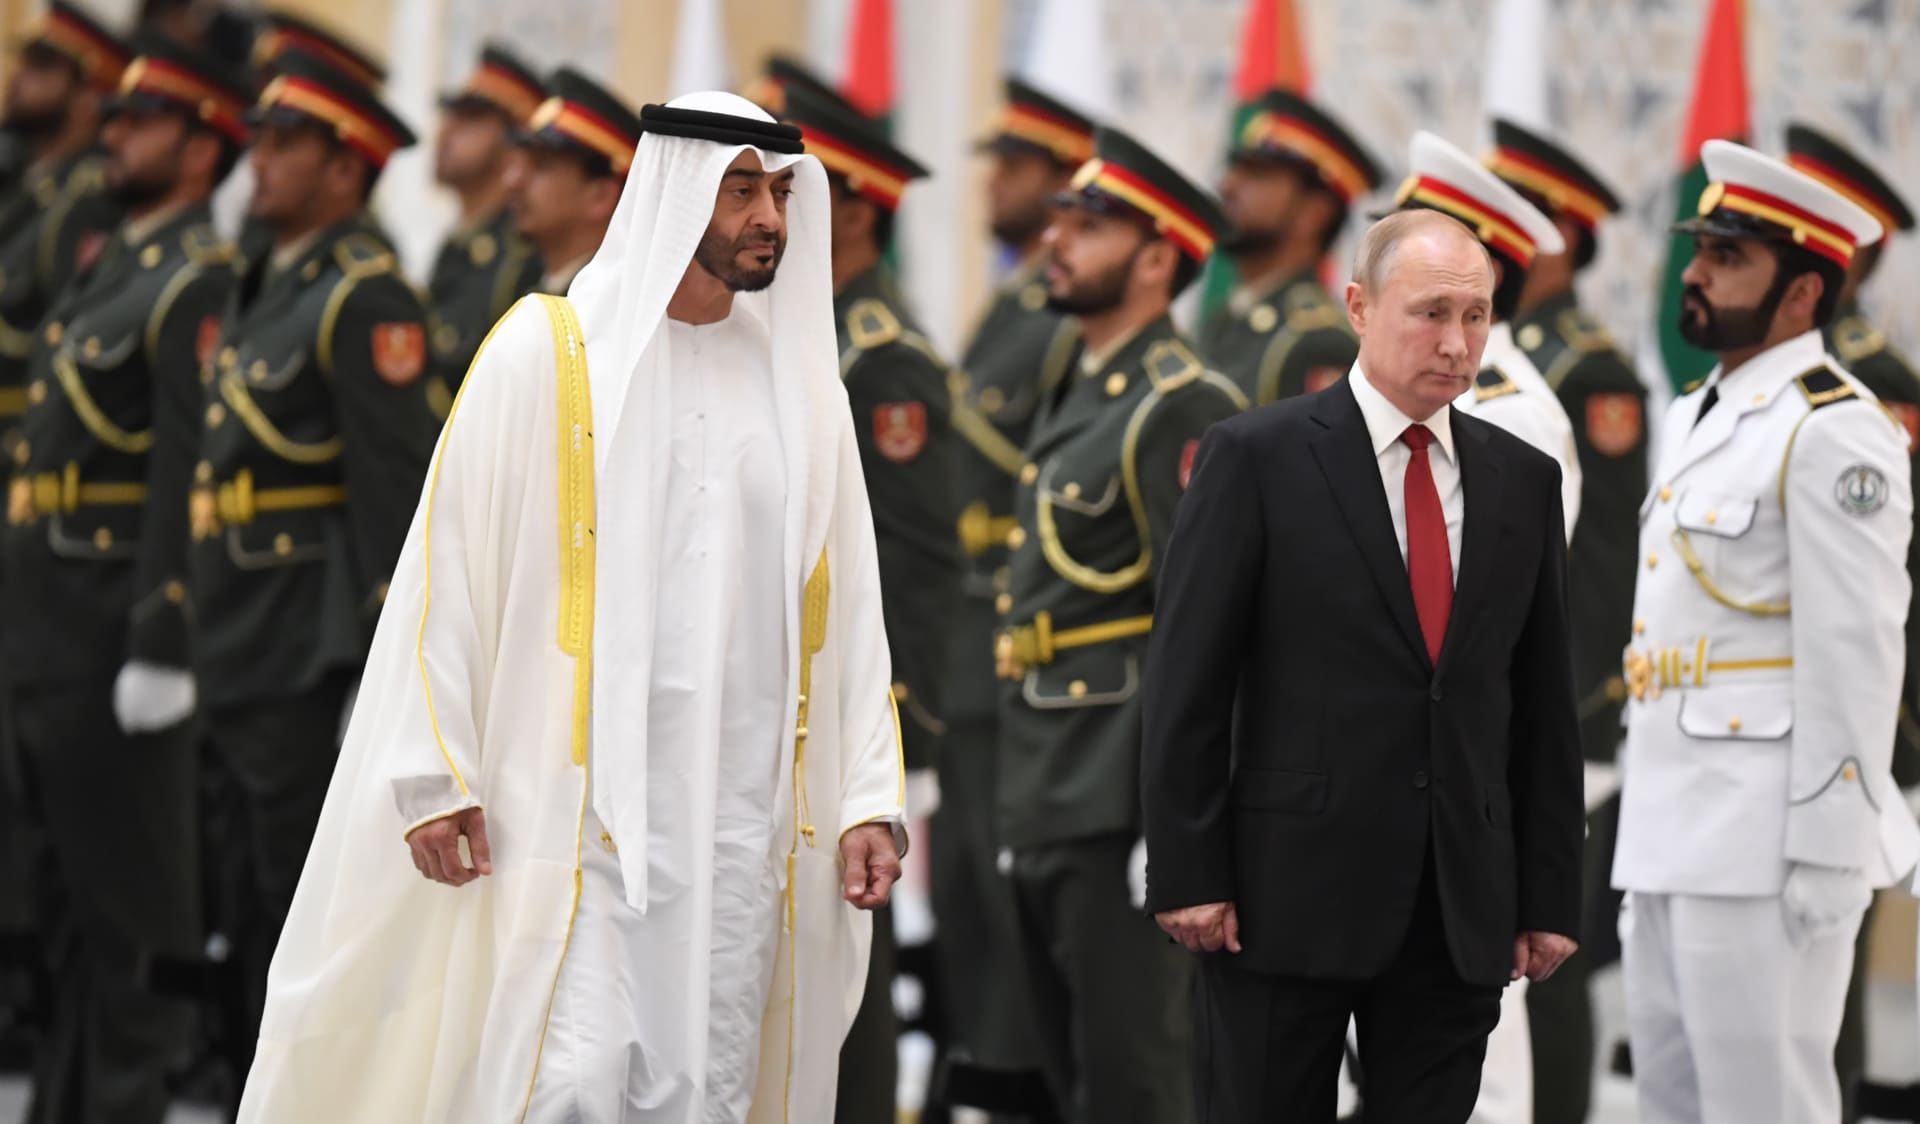 في زيارة ستشمل السعودية أيضا.. بوتين يصل إلى الإمارات لأول مرة منذ 2019